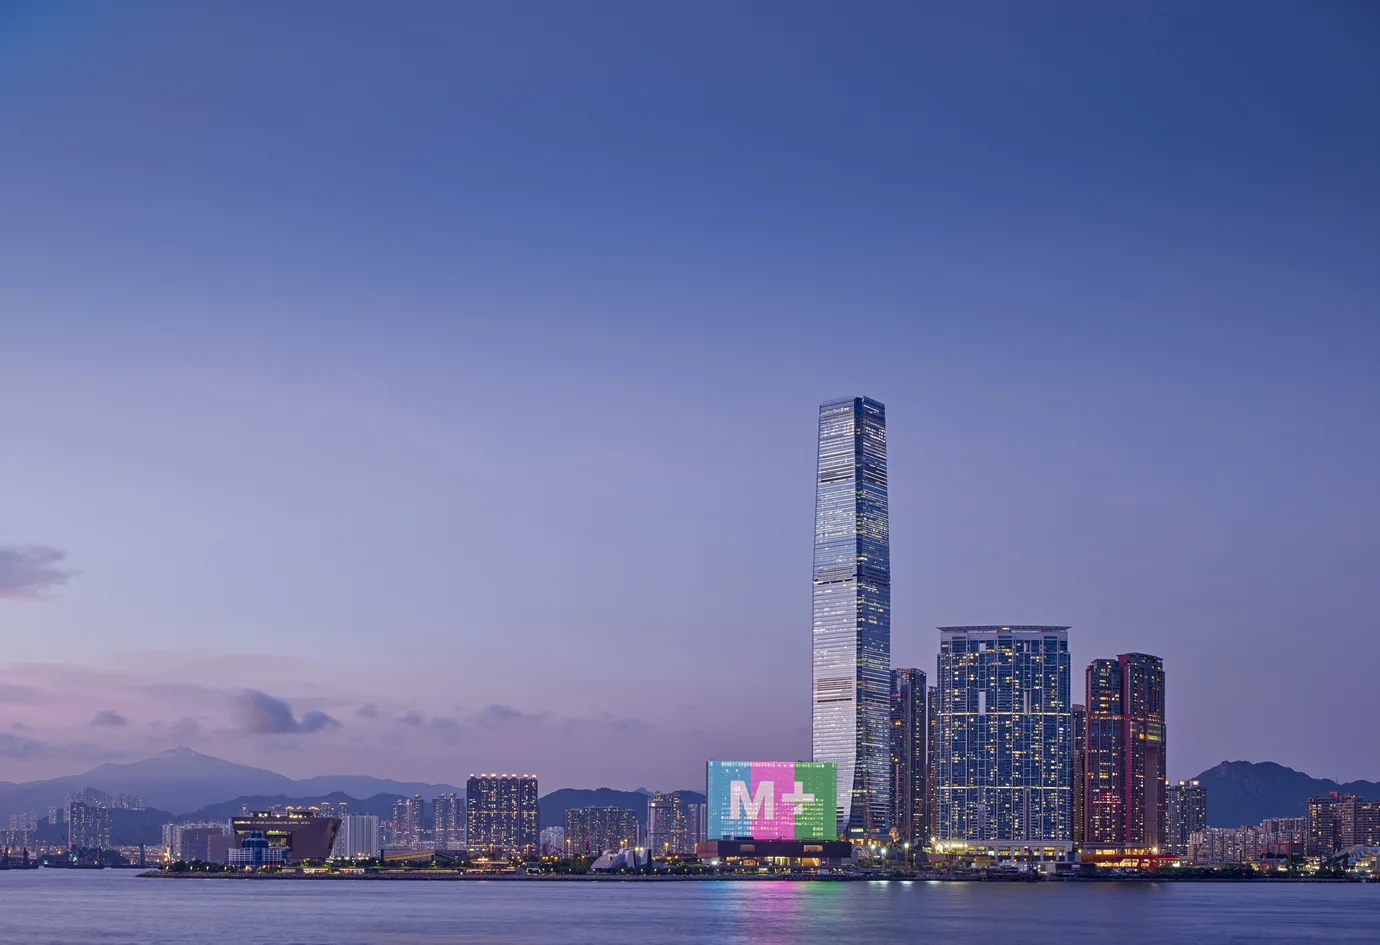 從香港島方向遠眺，看見維多利亞港對岸的M+大樓。相片的右邊是幾幢大樓，包括一座長方形的大樓，上面以三元色投射着「M+」字樣。